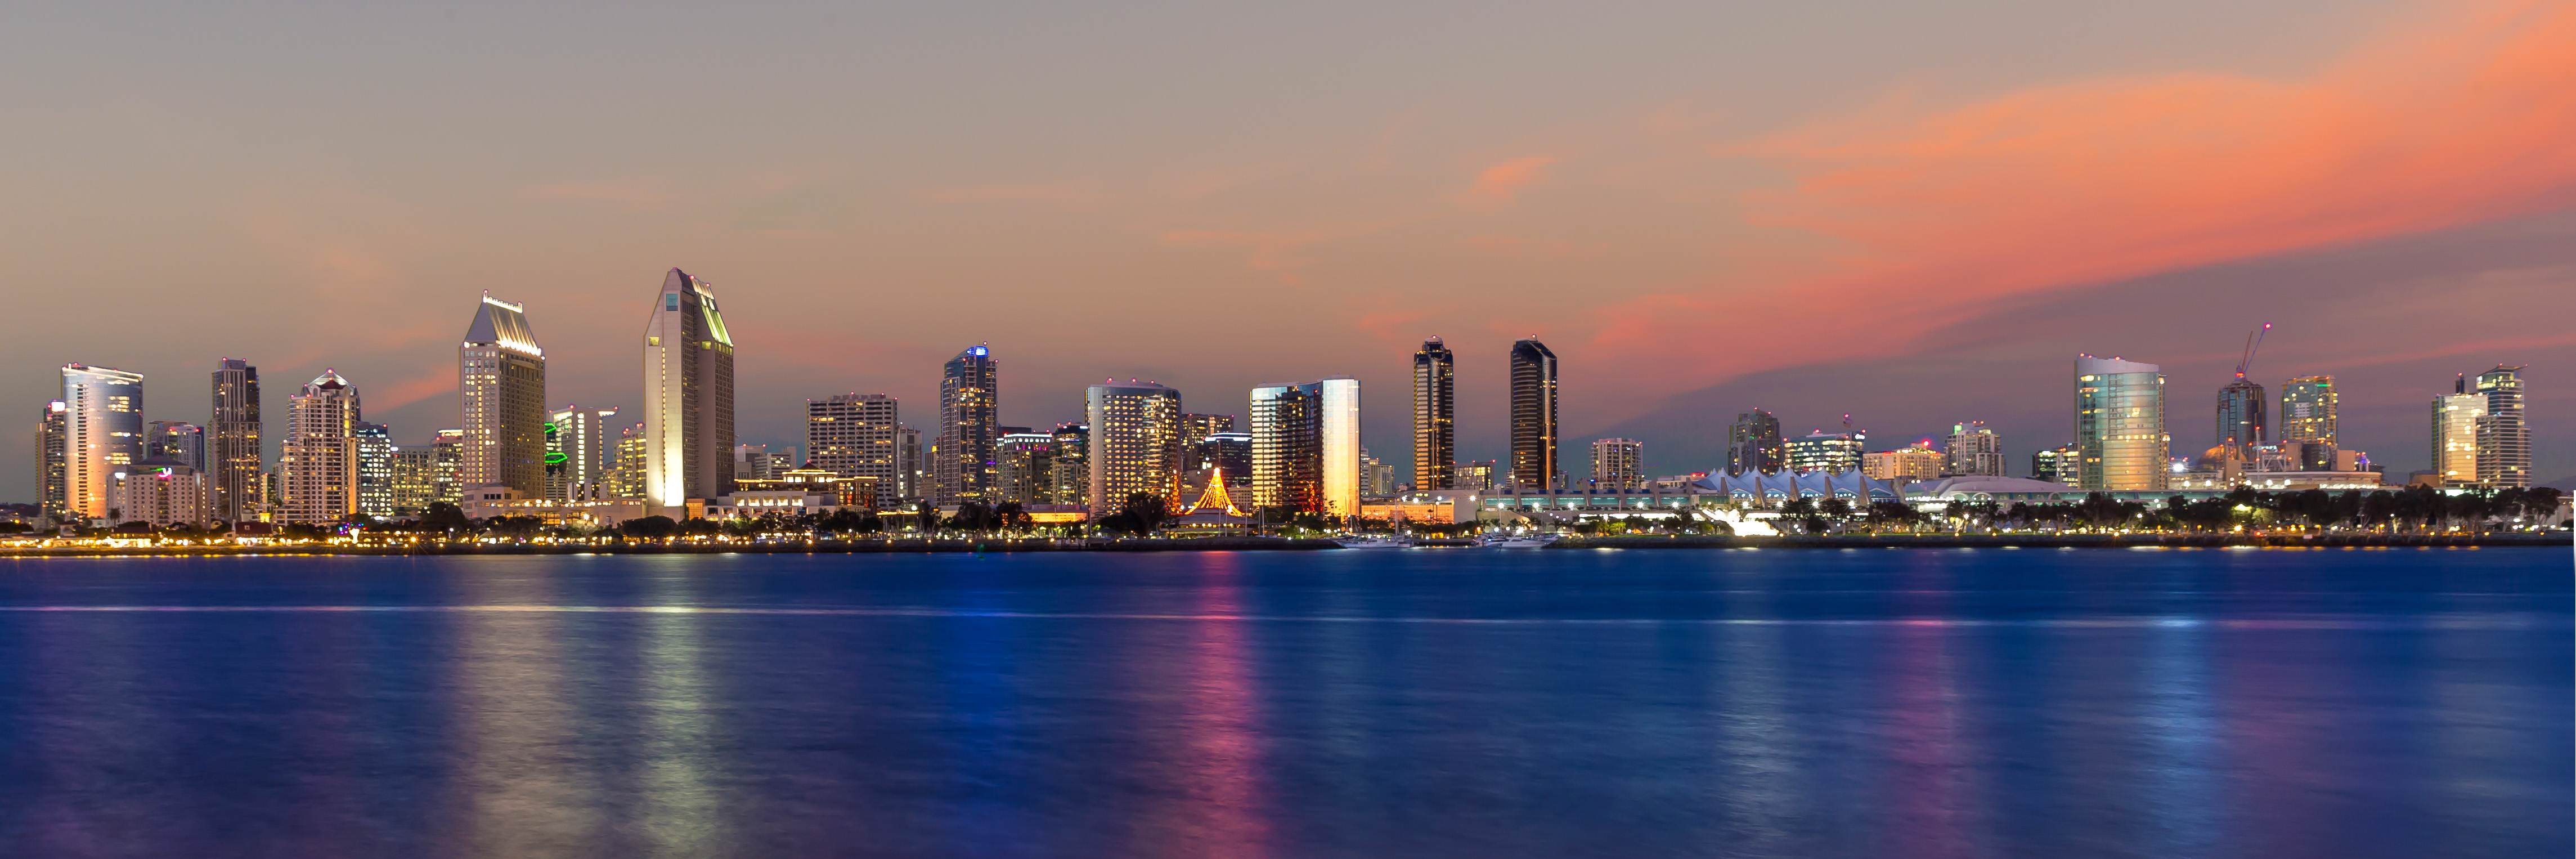 17 San Diego Skyline